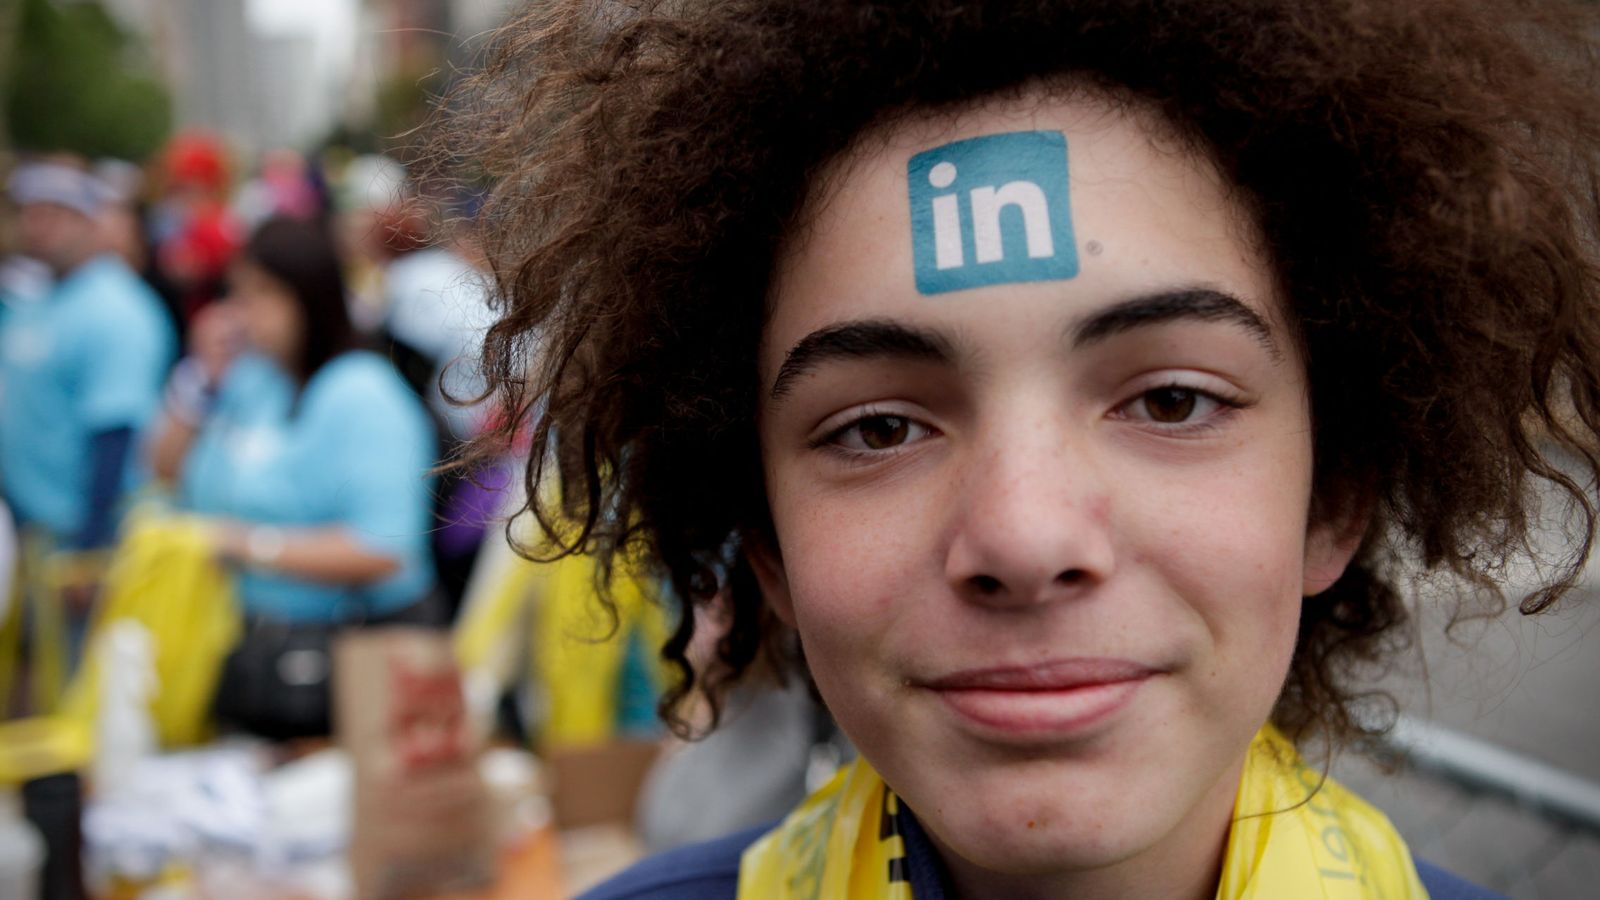 Foto: Conectar con un reclutador en Linkedin puede ser la mejor forma de encontrar empleo, pero, si das con uno falso, puede acabar muy mal. Foto: A Name Like Shields Can Make You Defensive (Flickr).